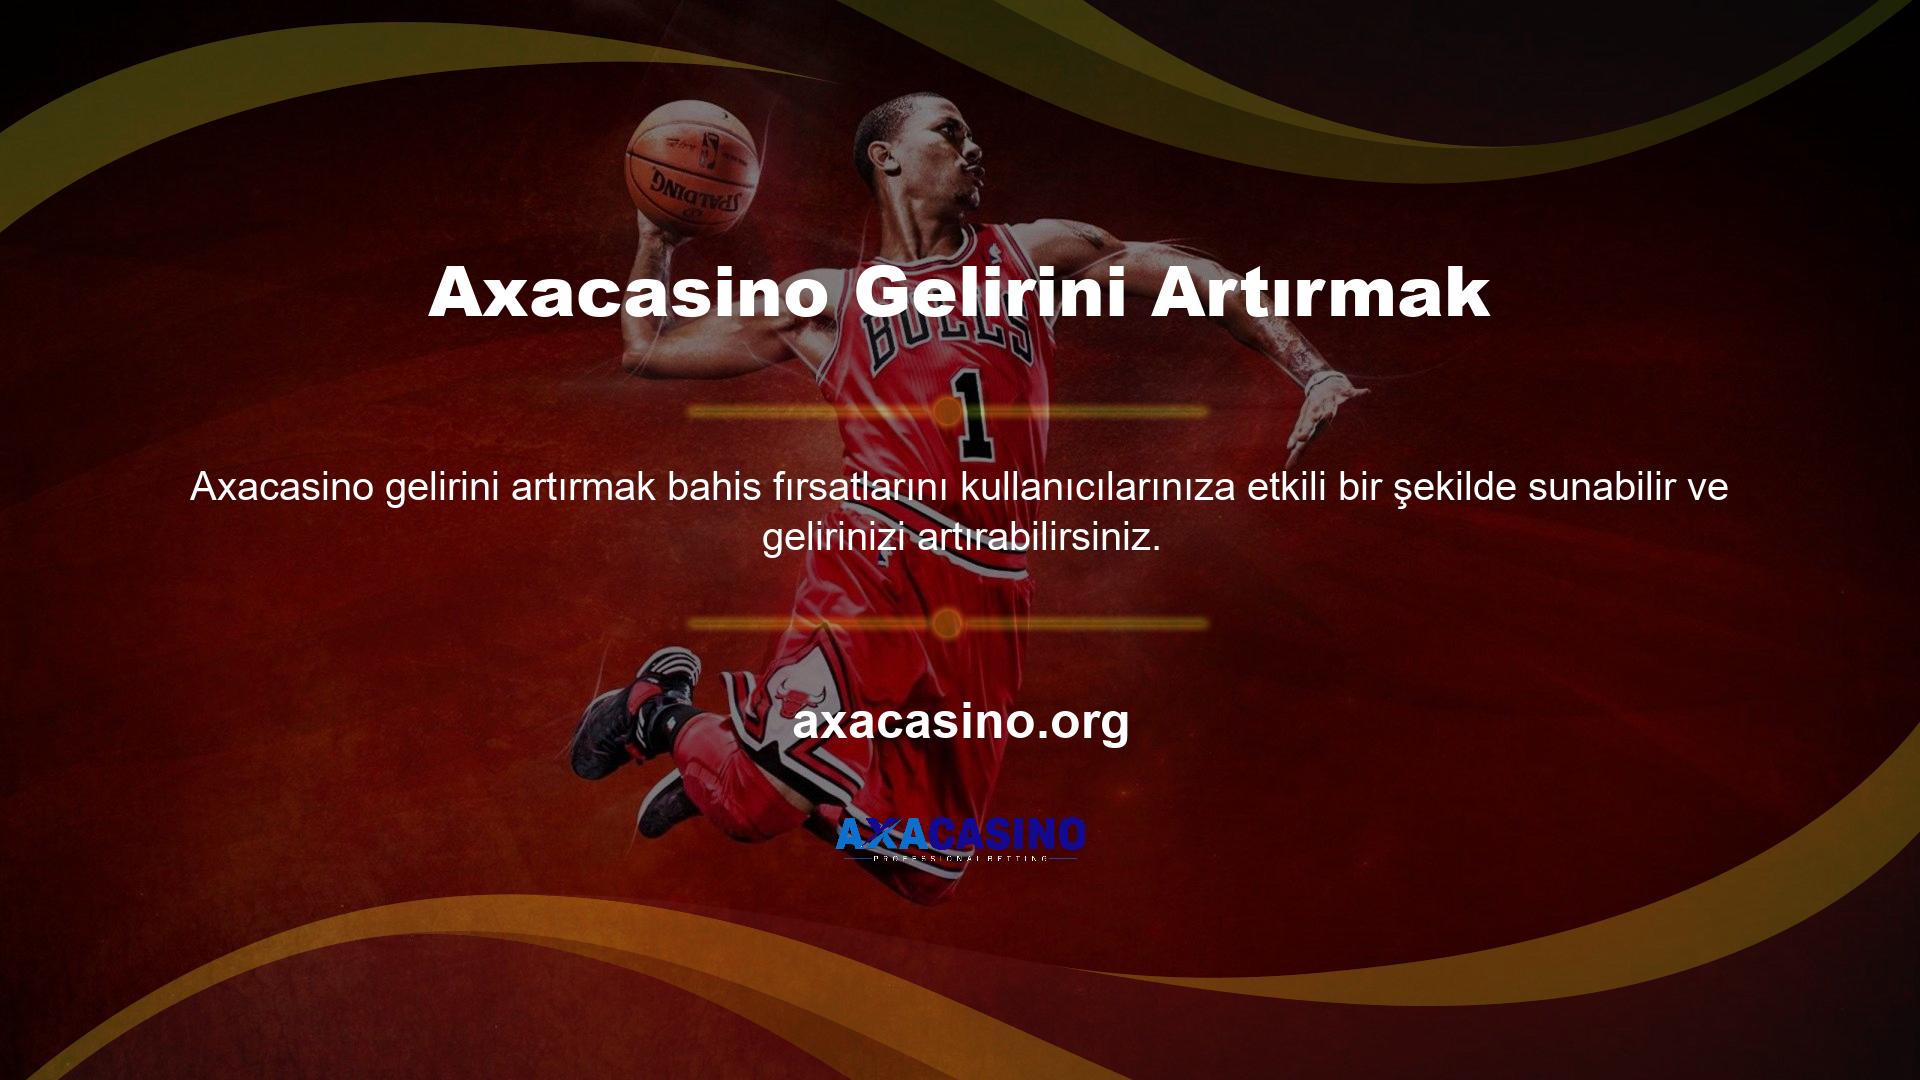 Axacasino spor bahisleri yeni dünya bahis seçeneklerinden biridir